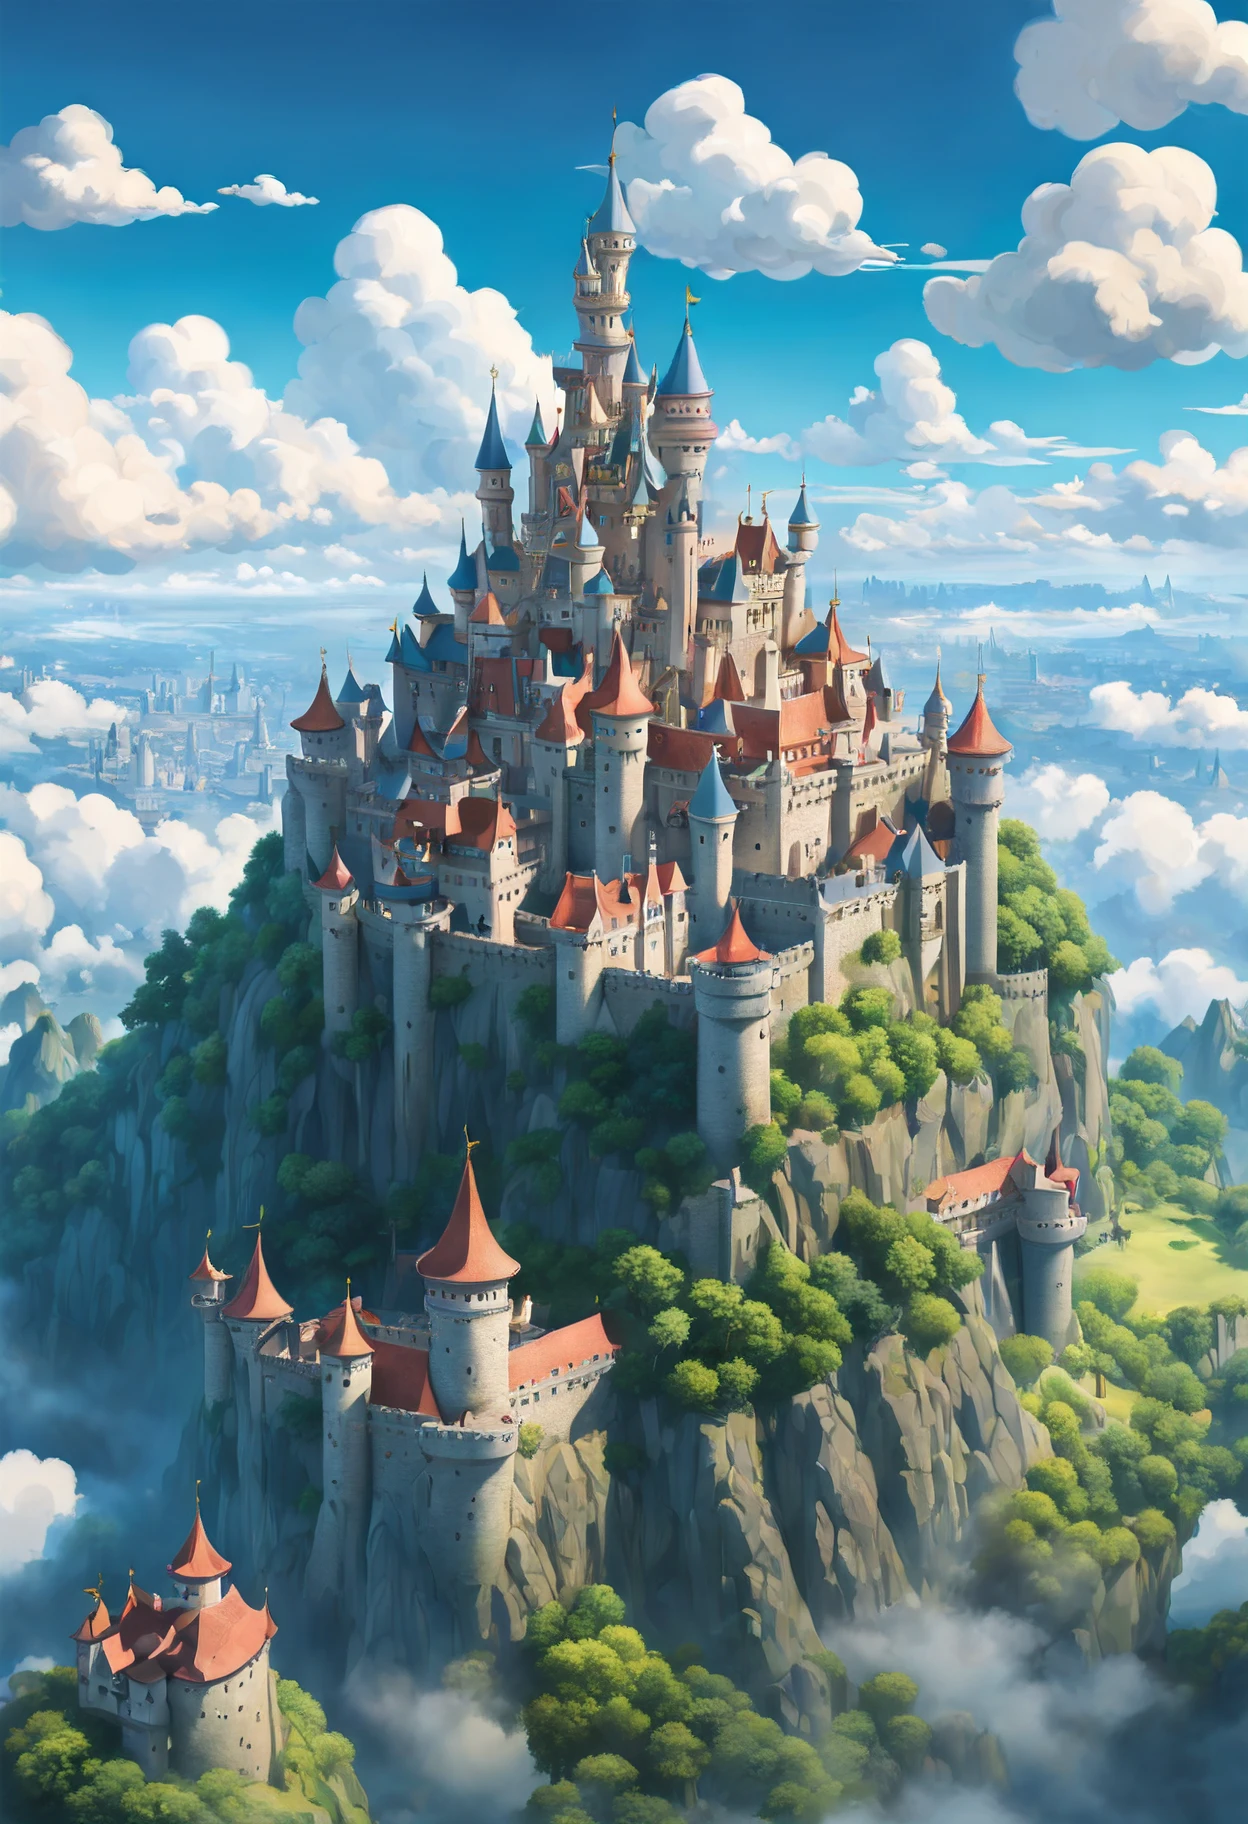 Una fusión del estilo artístico de Hayao Miyazaki y Studio Ghibli, [castillo|fortaleza del cielo], volando entre las nubes, espléndida vista de un (reino animado en el cielo:1.5), visto a través de la lente de un (drone:1.2), capturado en vivo, panorámico 8K, pintado con colores caprichosos, ambientado en un (Tarde soleada), featuring meticulous details of the castillo architecture, capturando la esencia de un estilo onírico y mdjrny-v4, iluminación nostálgica que crea un encanto vintage, resaltado por un [(Steven Spielberg:1.2) Magia cinematográfica inspirada.], Detalles intrincados que recuerdan el estilo de Claude Monet y Vincent van Gogh., un cuento de hadas cobra vida en un (teleobjetivo) disparo